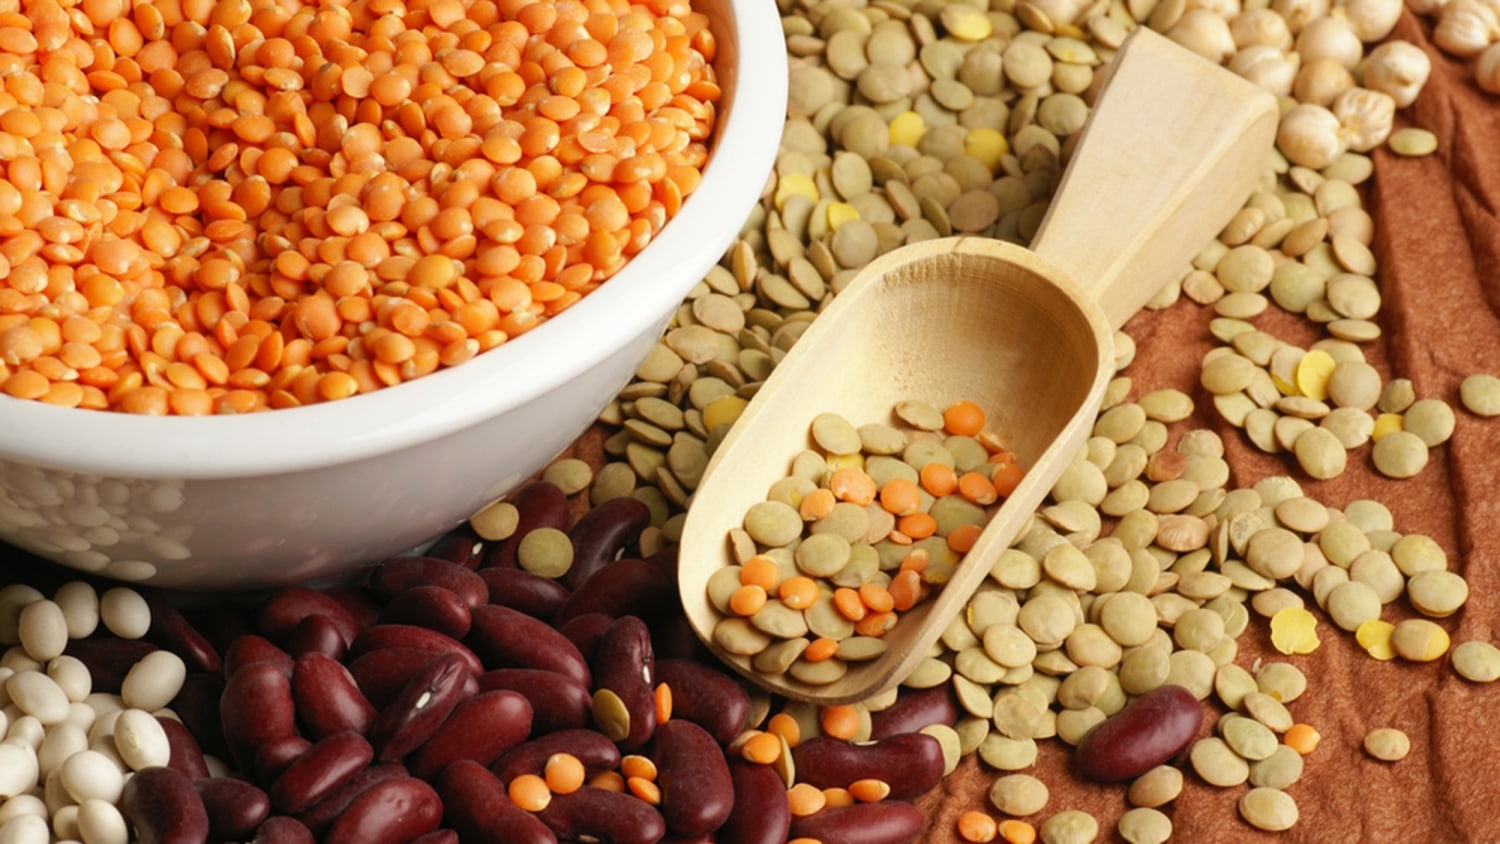 Nutrition Comparison: Carrots Vs Pinto Beans